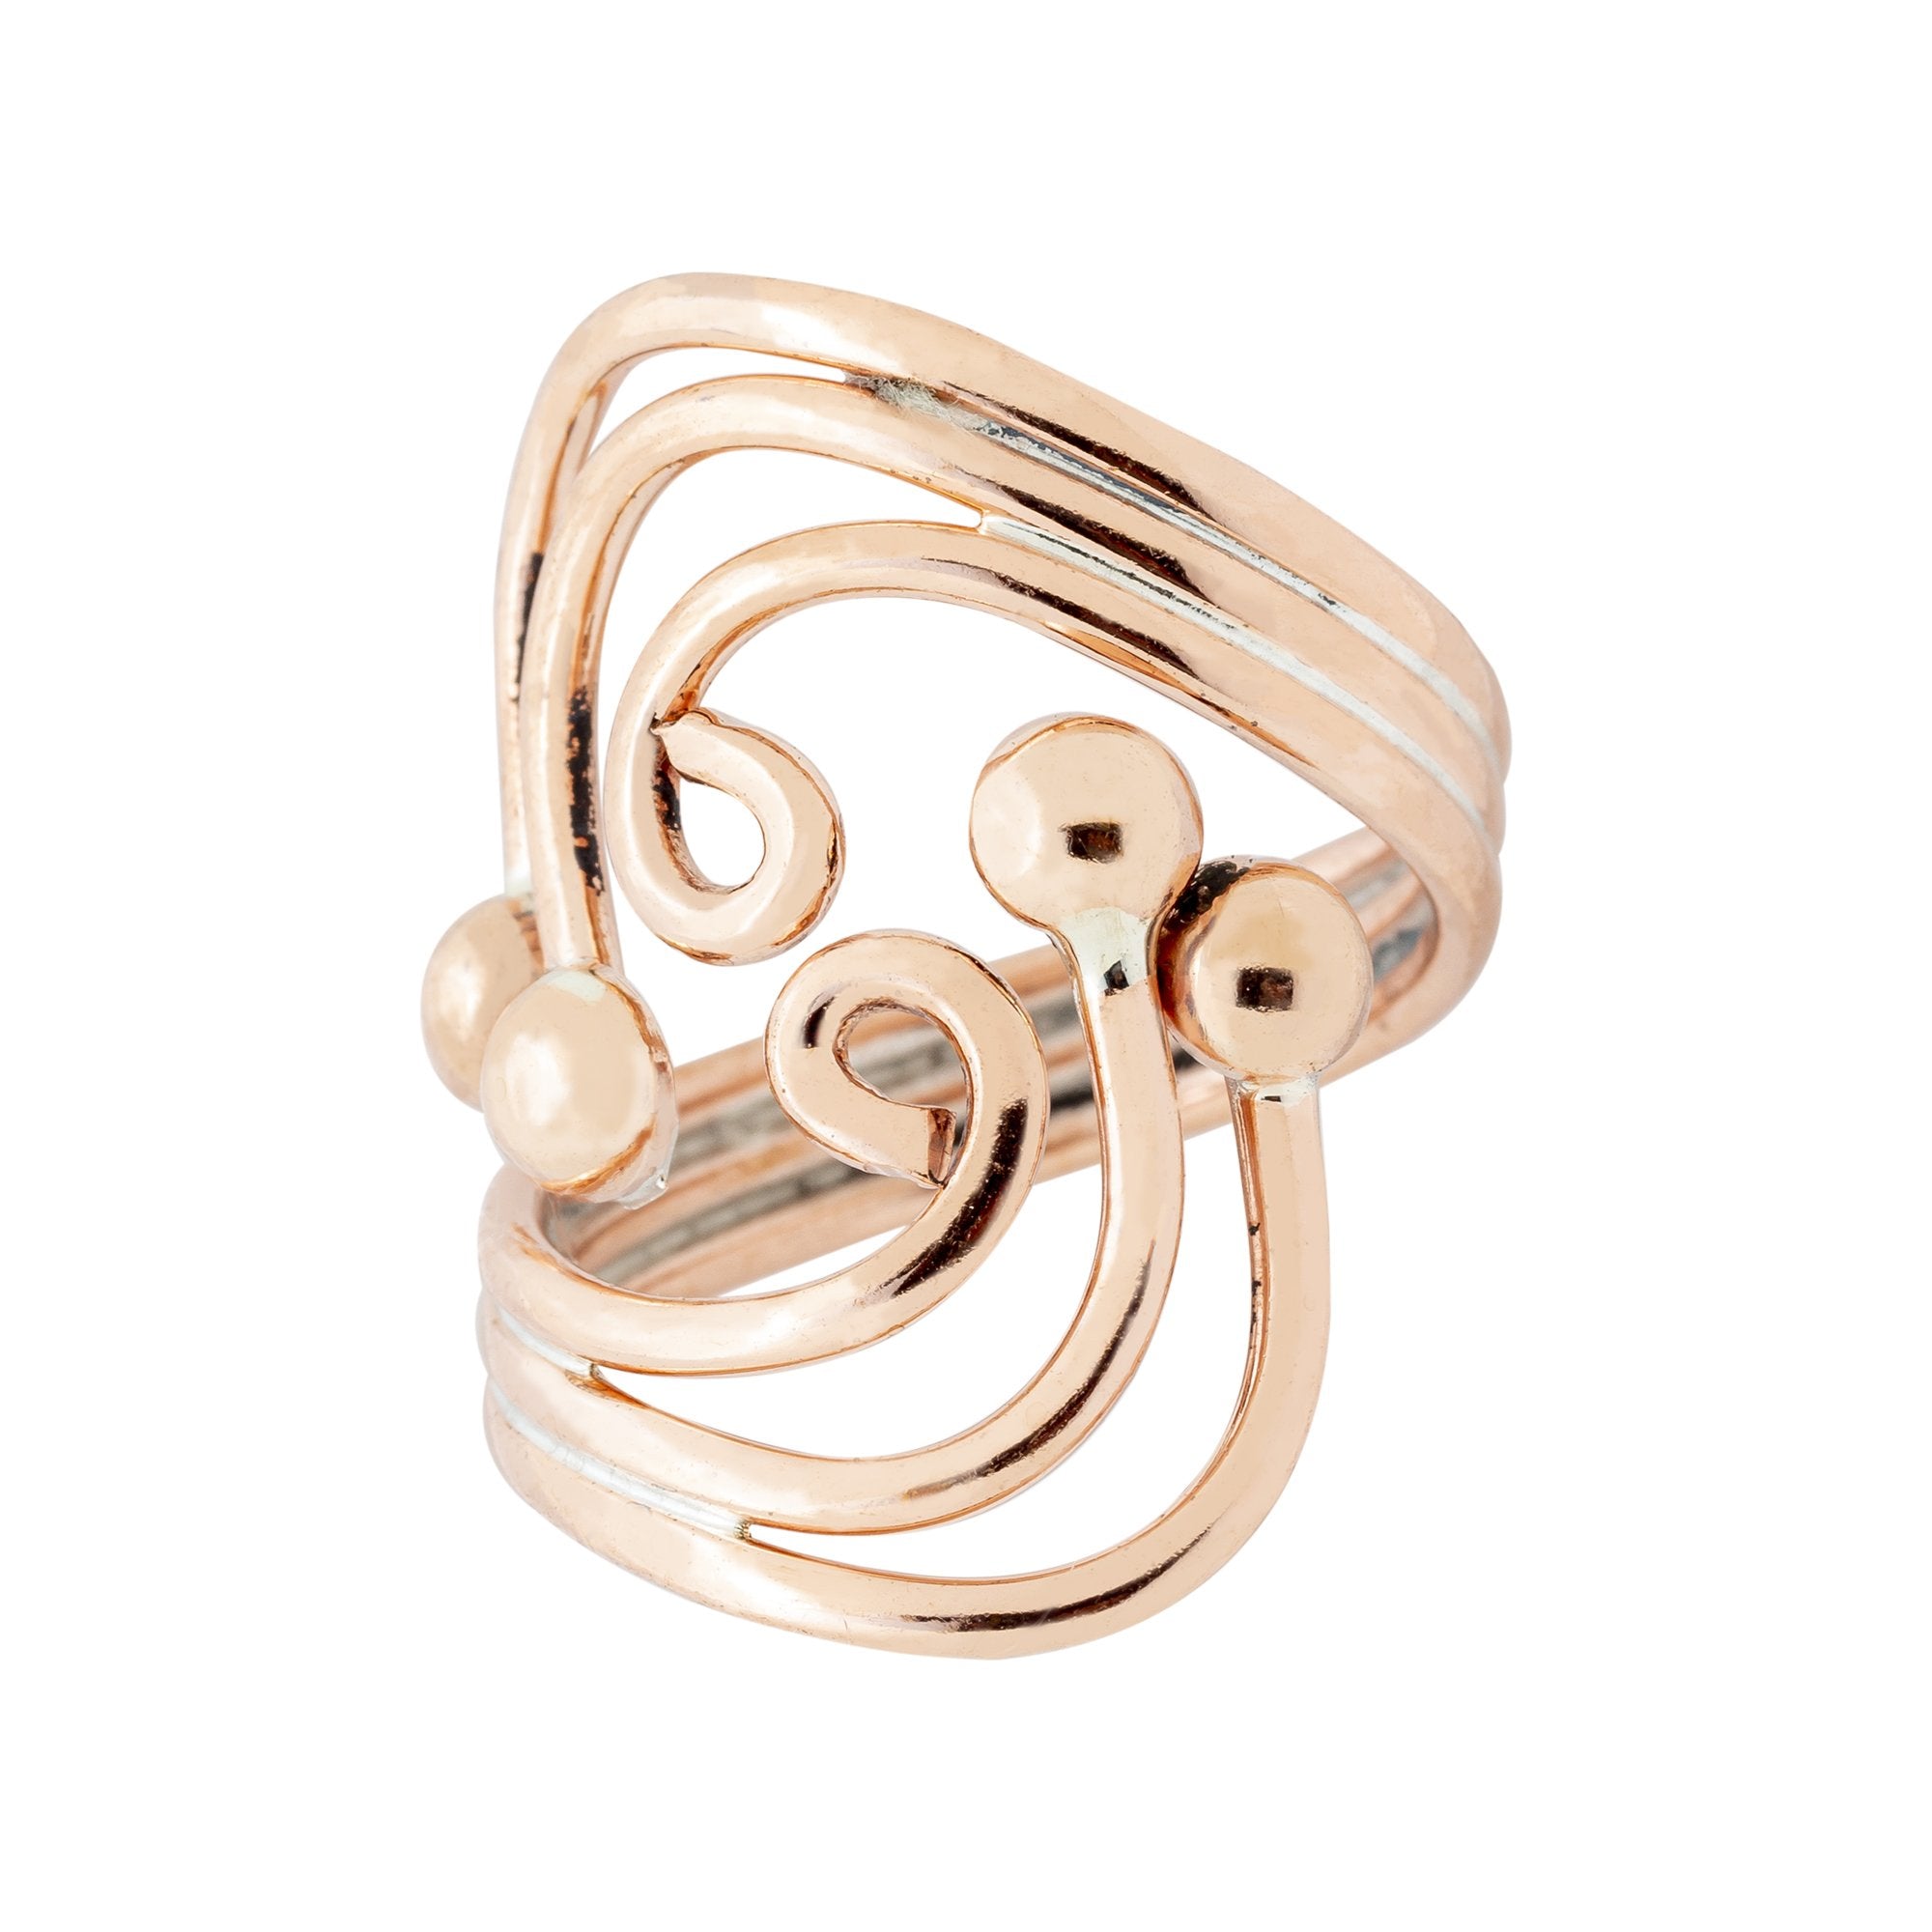 RG.FEL.4011 - Copper Ring